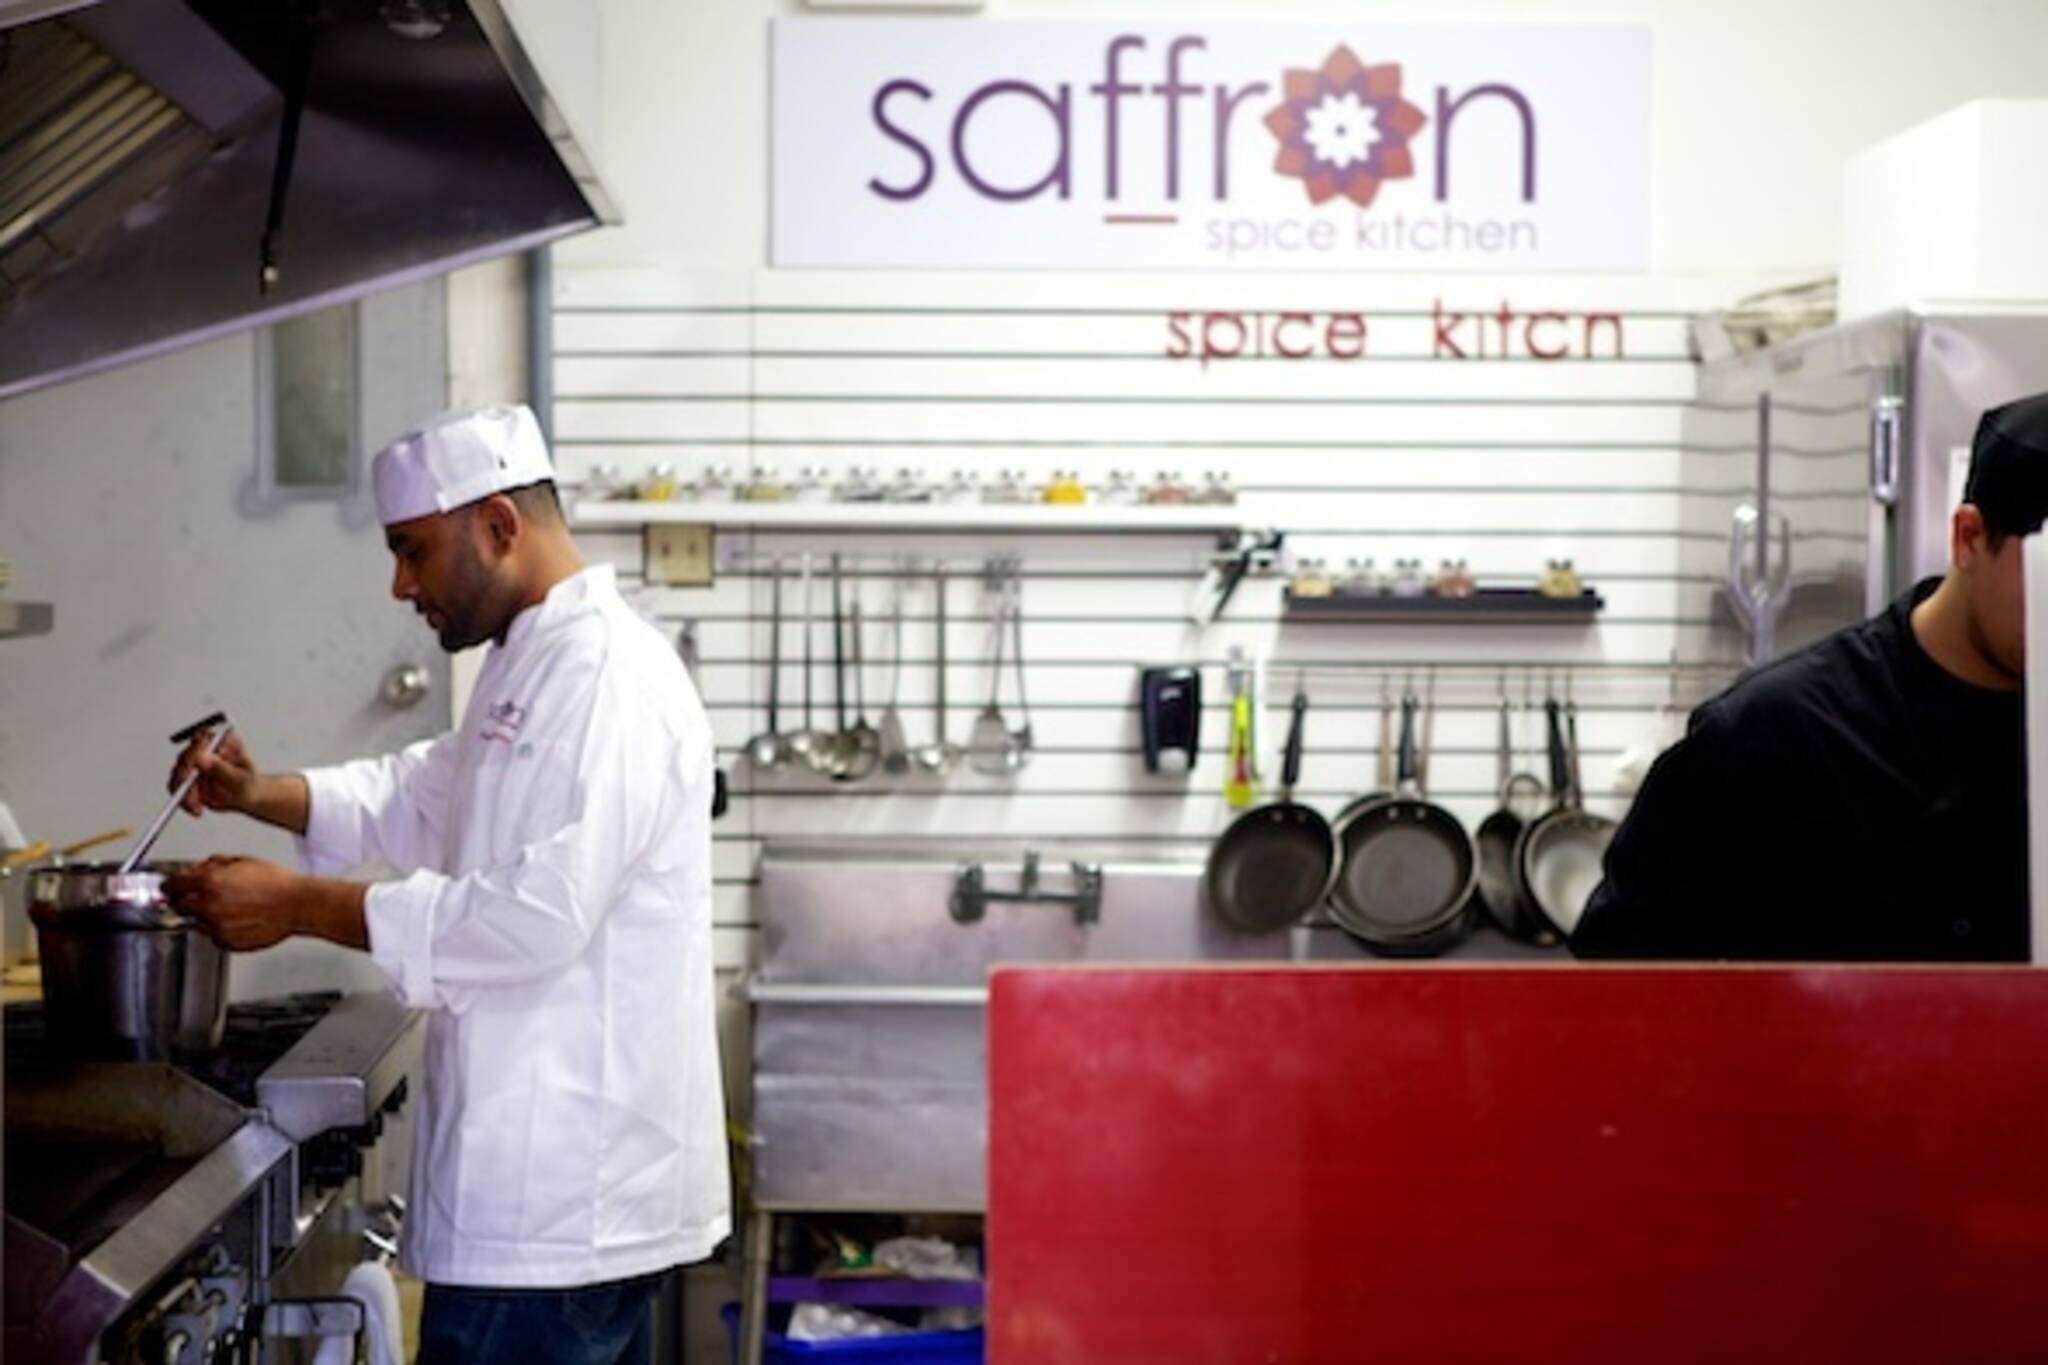 Saffron Spice Kitchen